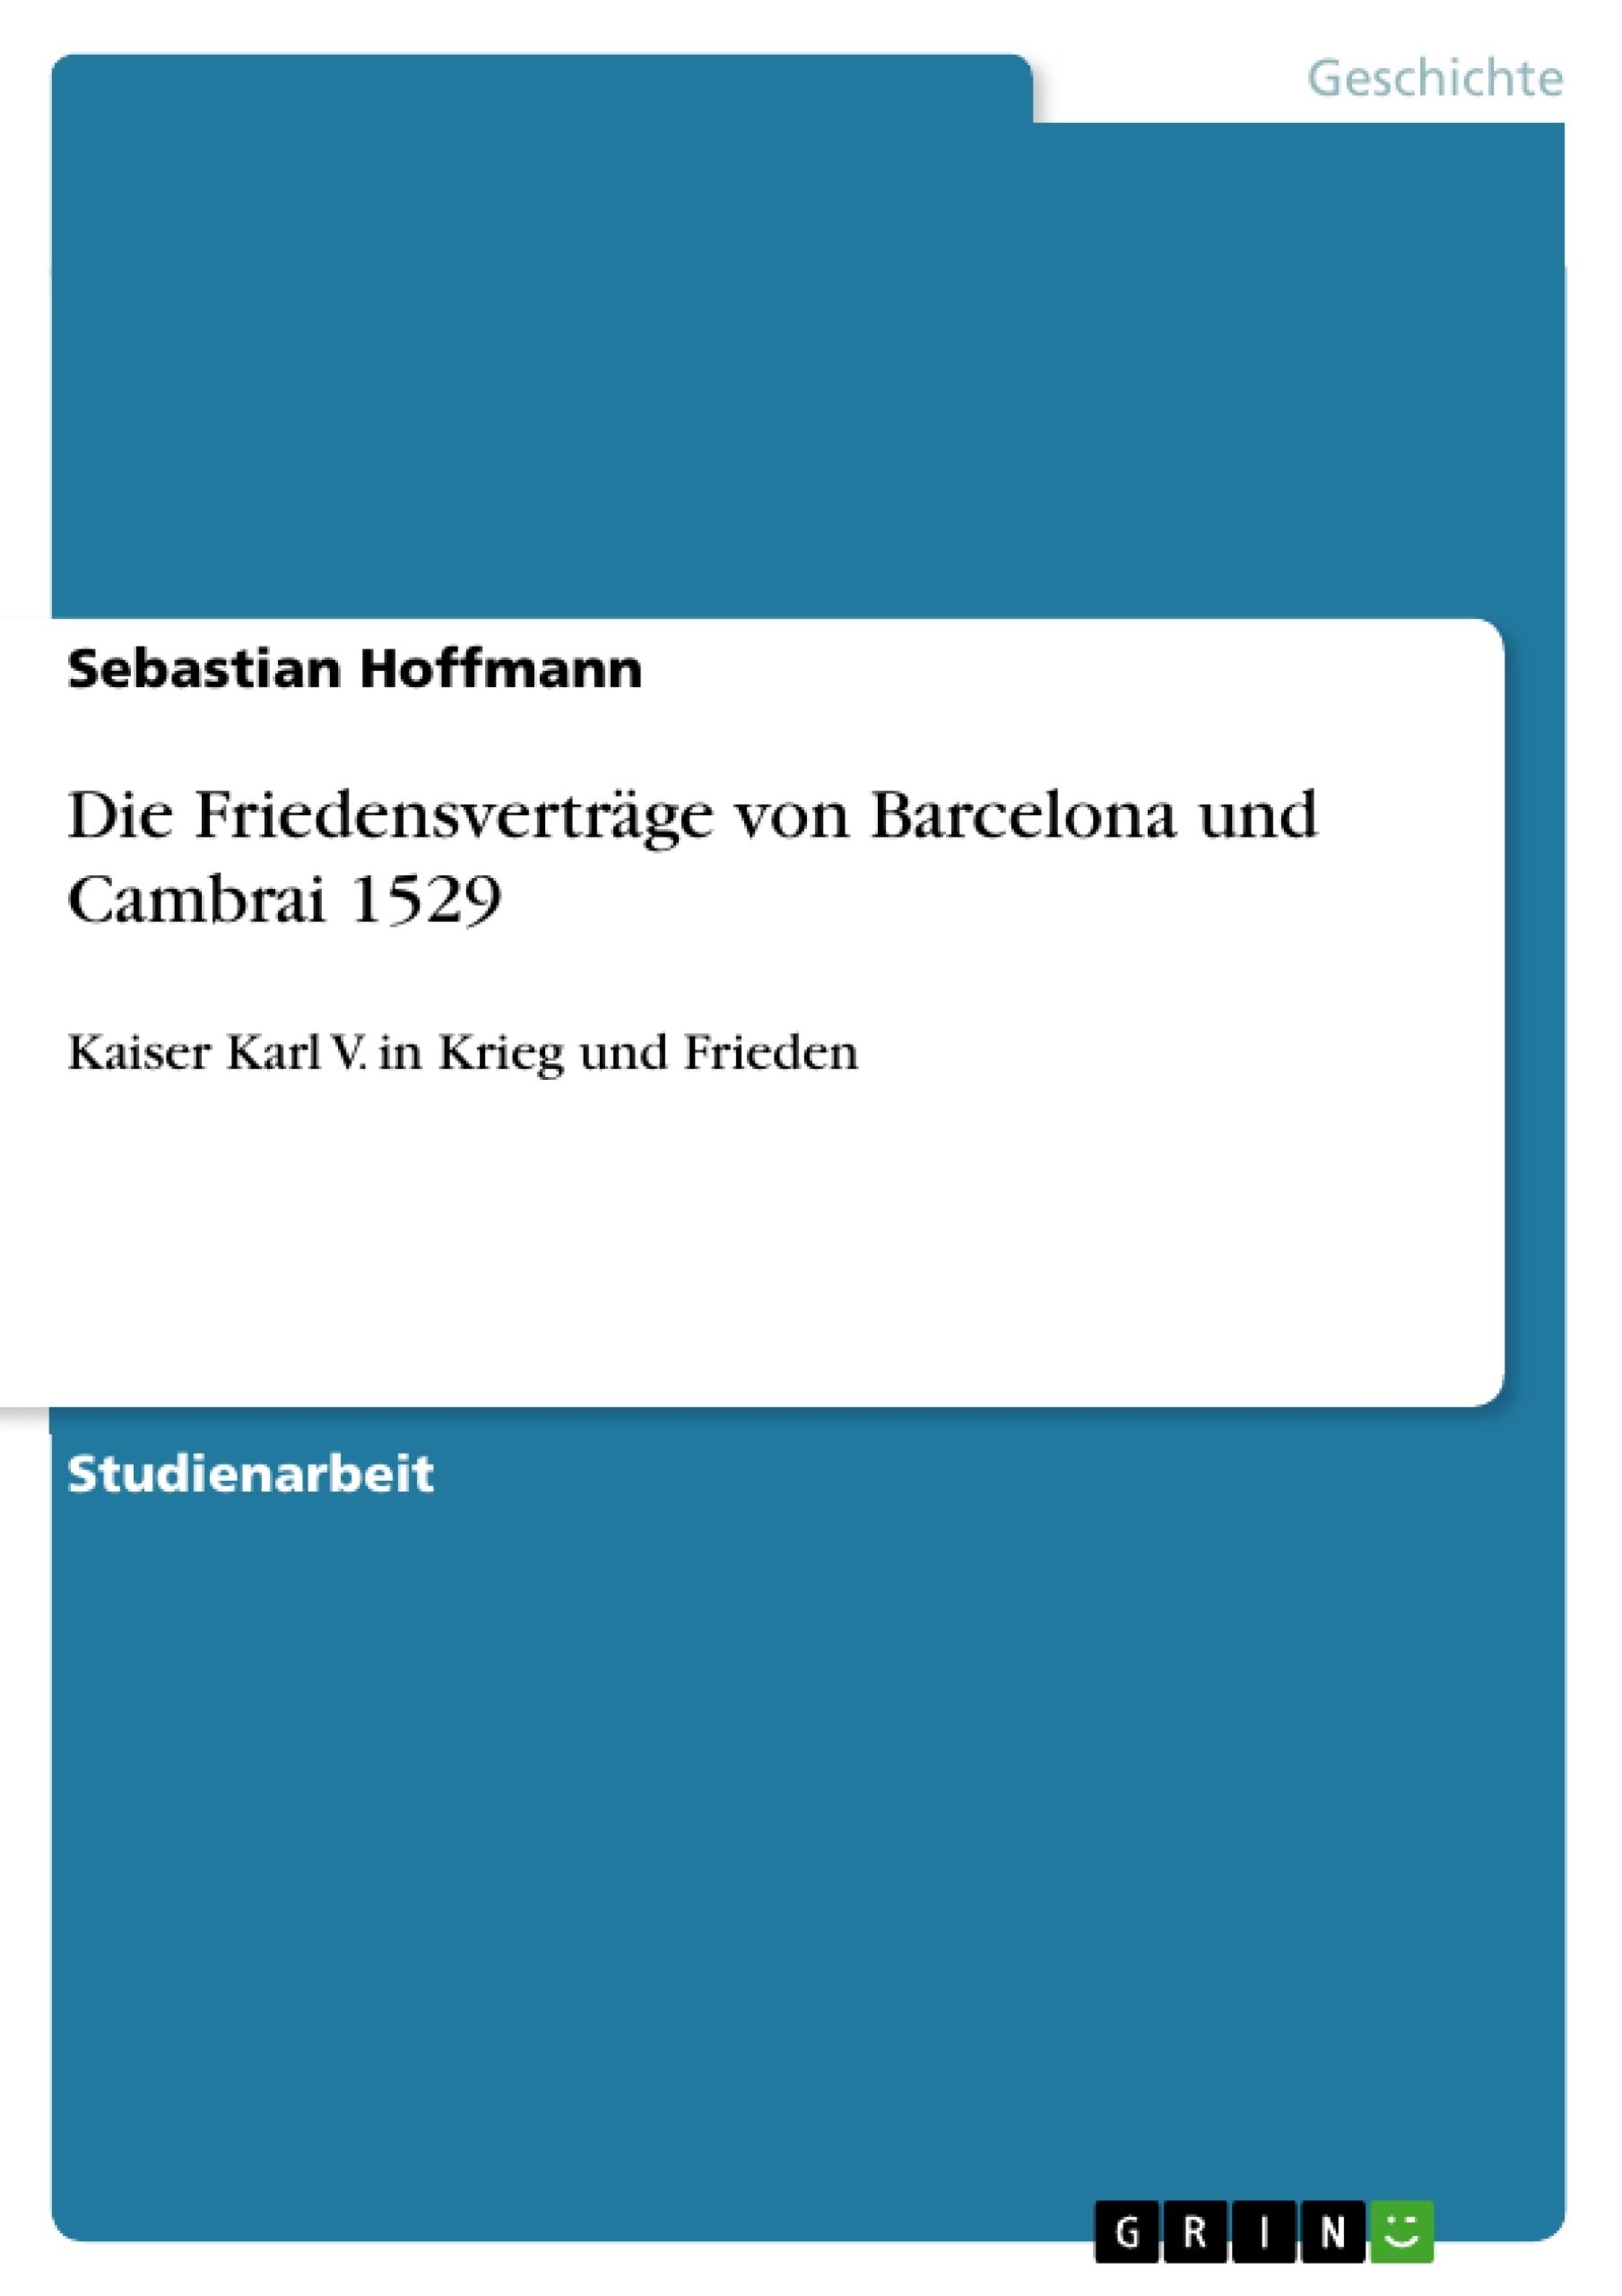 Título: Die Friedensverträge von Barcelona und Cambrai 1529